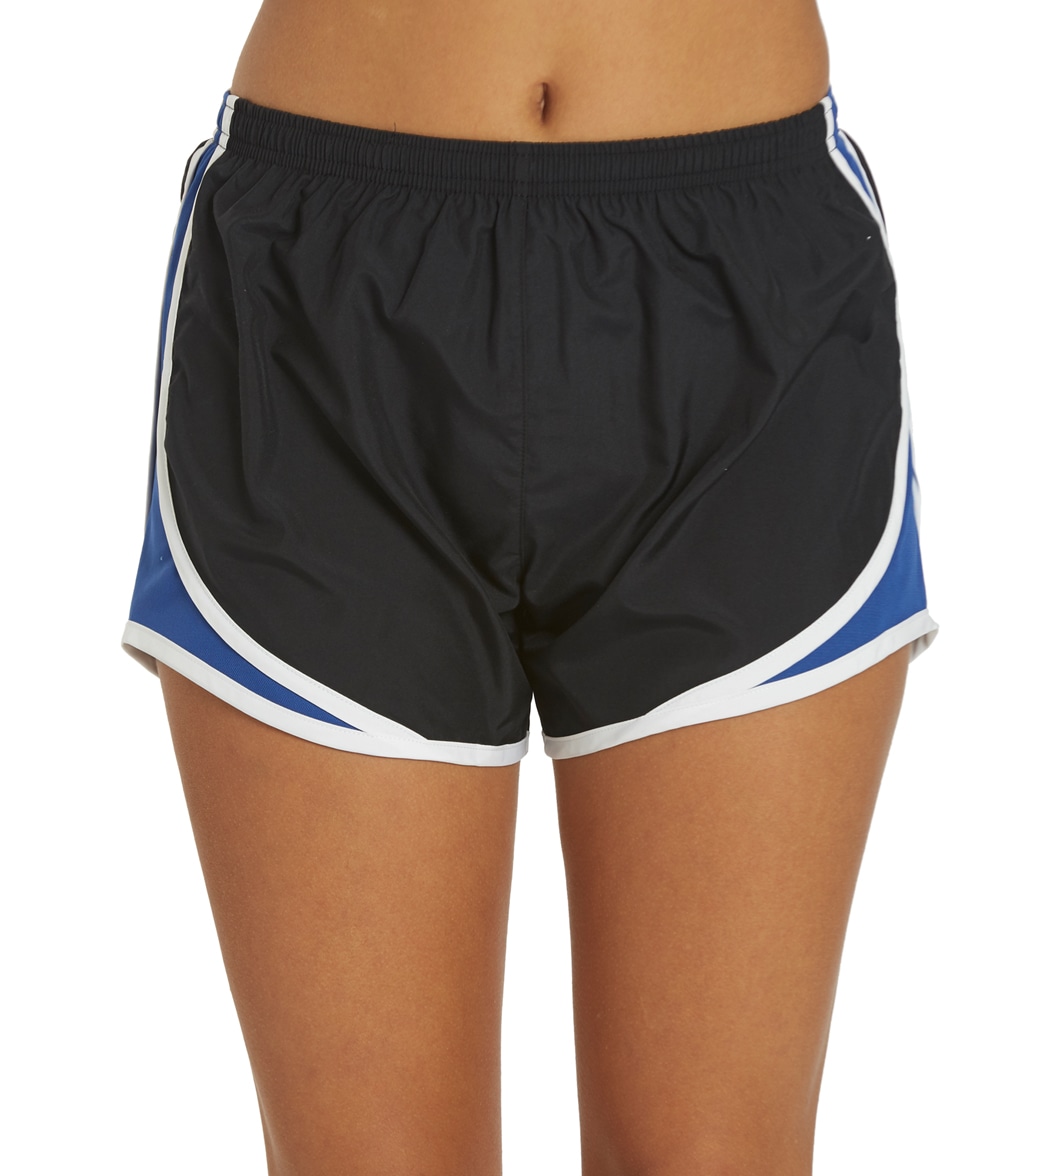 Women's Sport-Tek Cadence Short - Black/True Royal/White Large Polyester - Swimoutlet.com